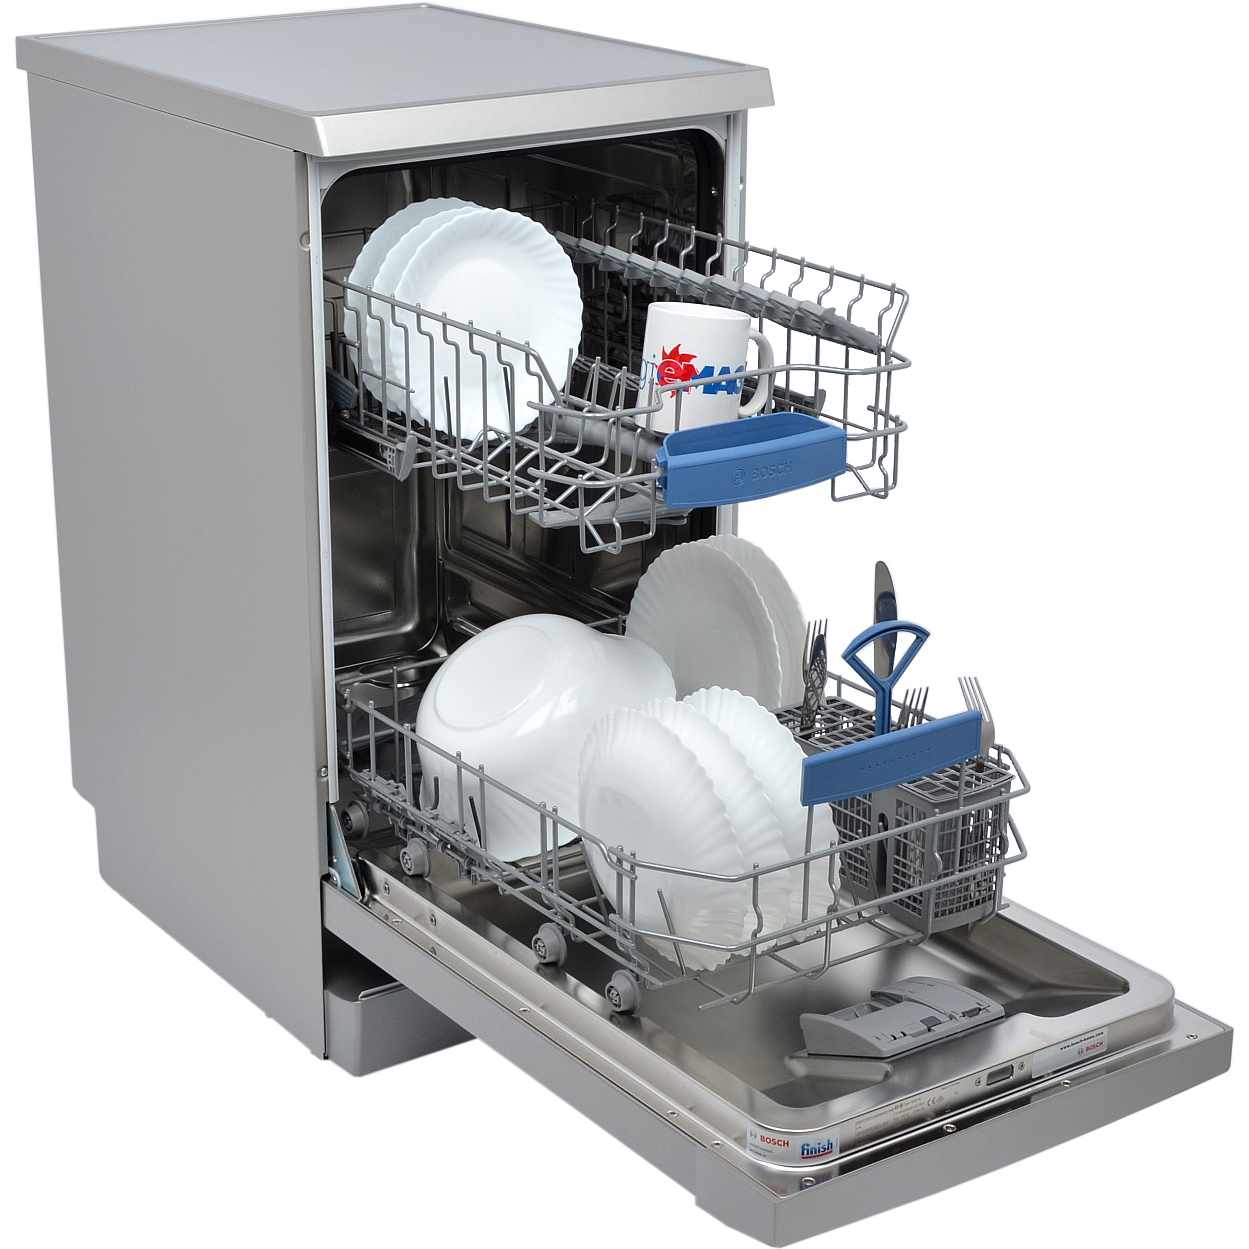 Куплю посудомоечную машину б у. Посудомоечная машина Bosch sps2ikw1br. Посудомоечная машина Neff s855hmx50r. ПММ бош sps53. Посудомоечная машина Bosch spv6hmx1mr.